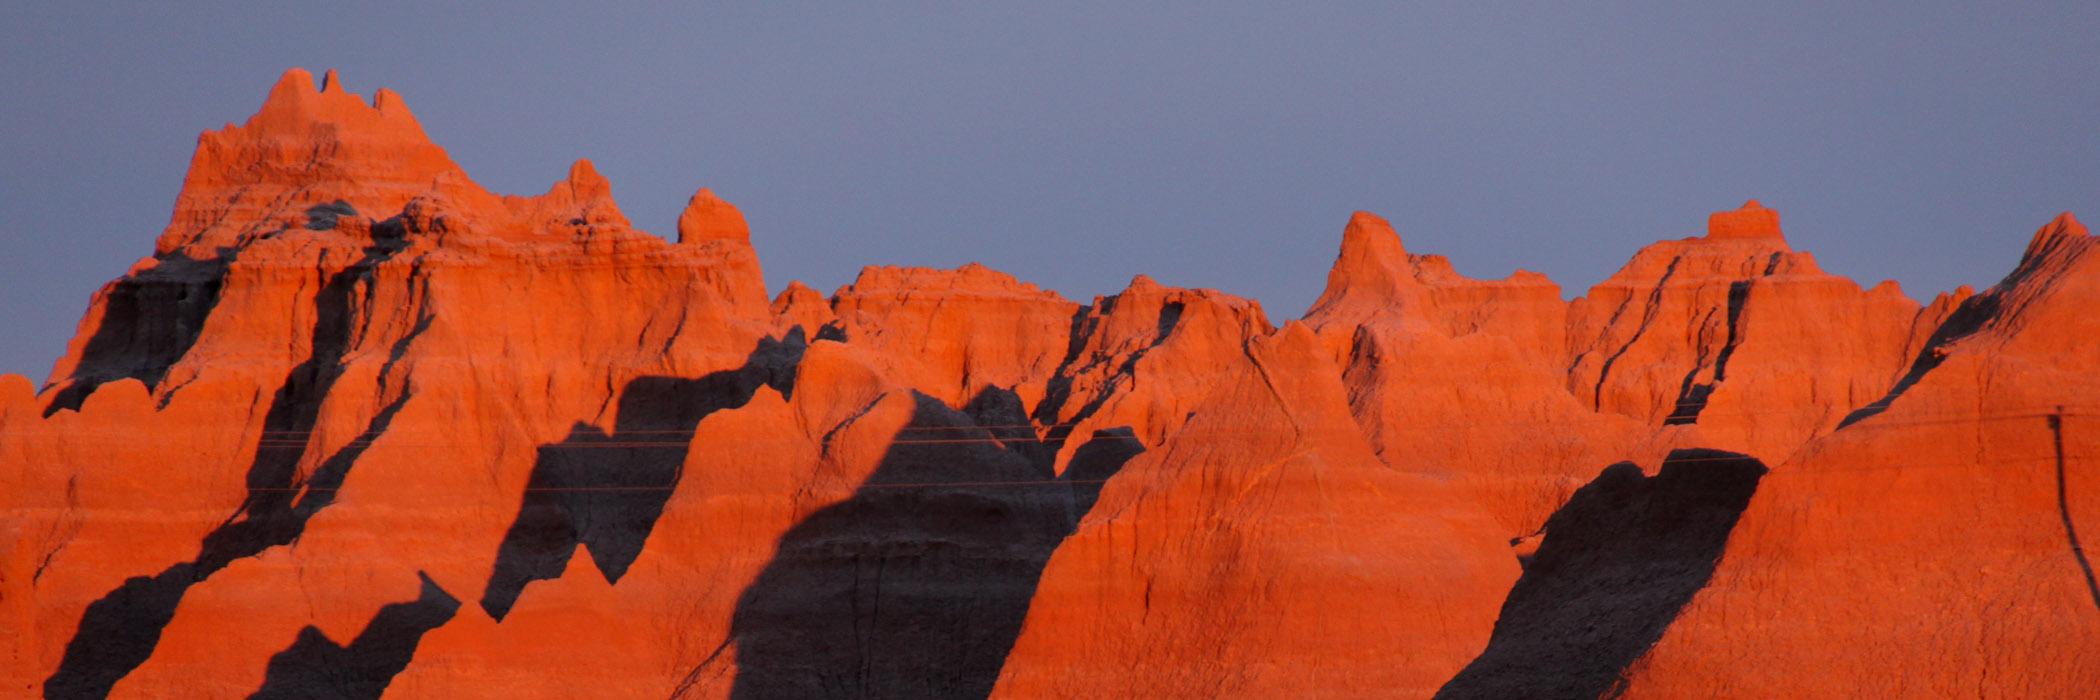 Badlands Sunrises & Sunsets (U.S. National Park Service)